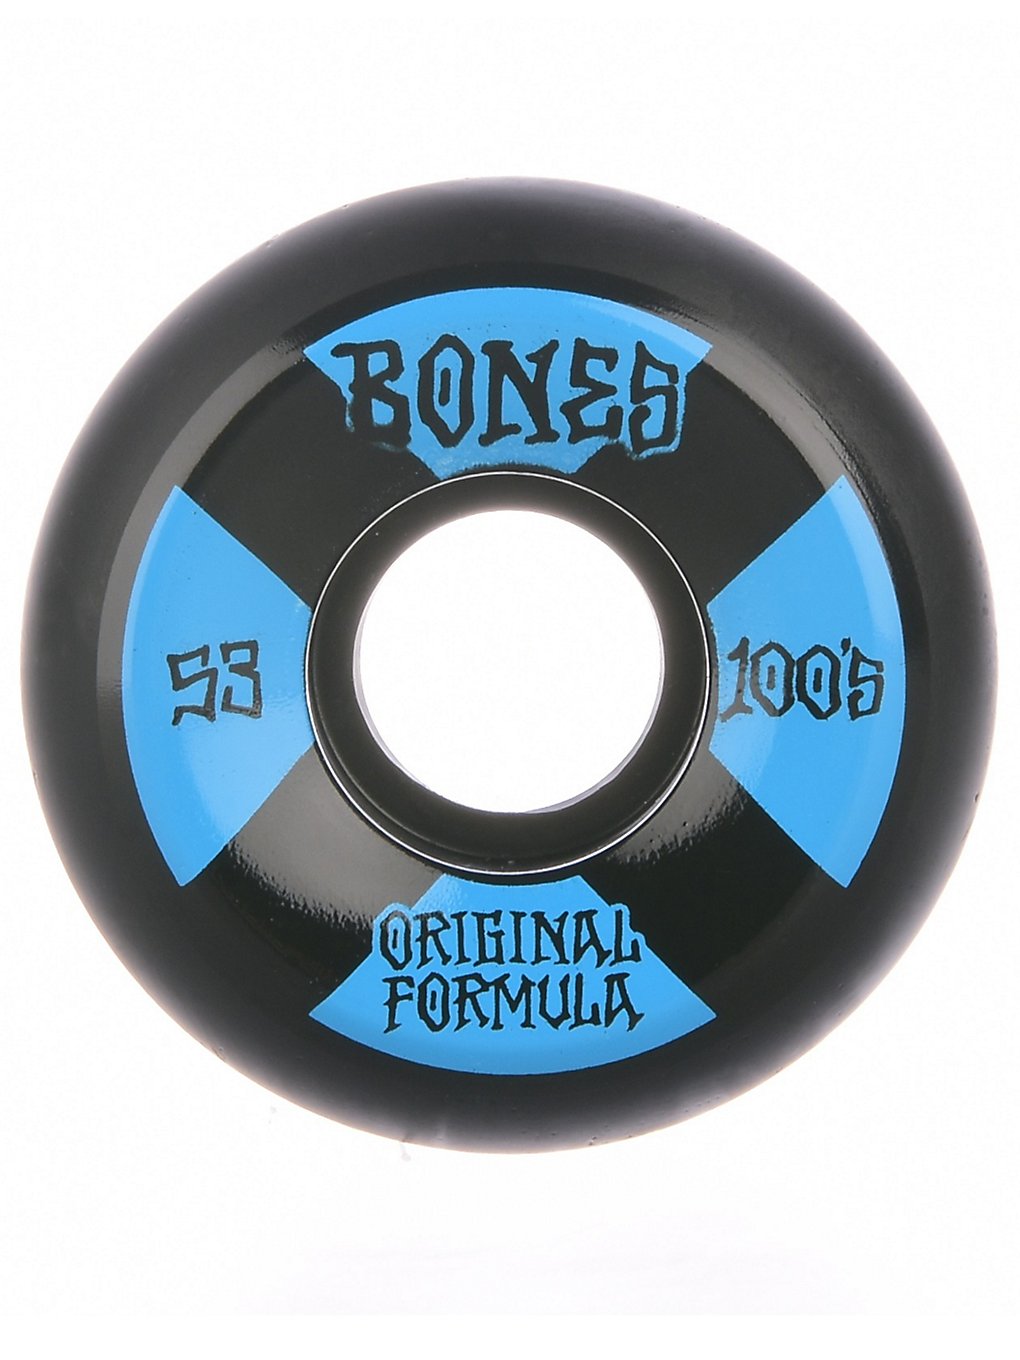 Bones Wheels 100's OG #4 V5 Sidecut 100A 53mm Rollen blue kaufen